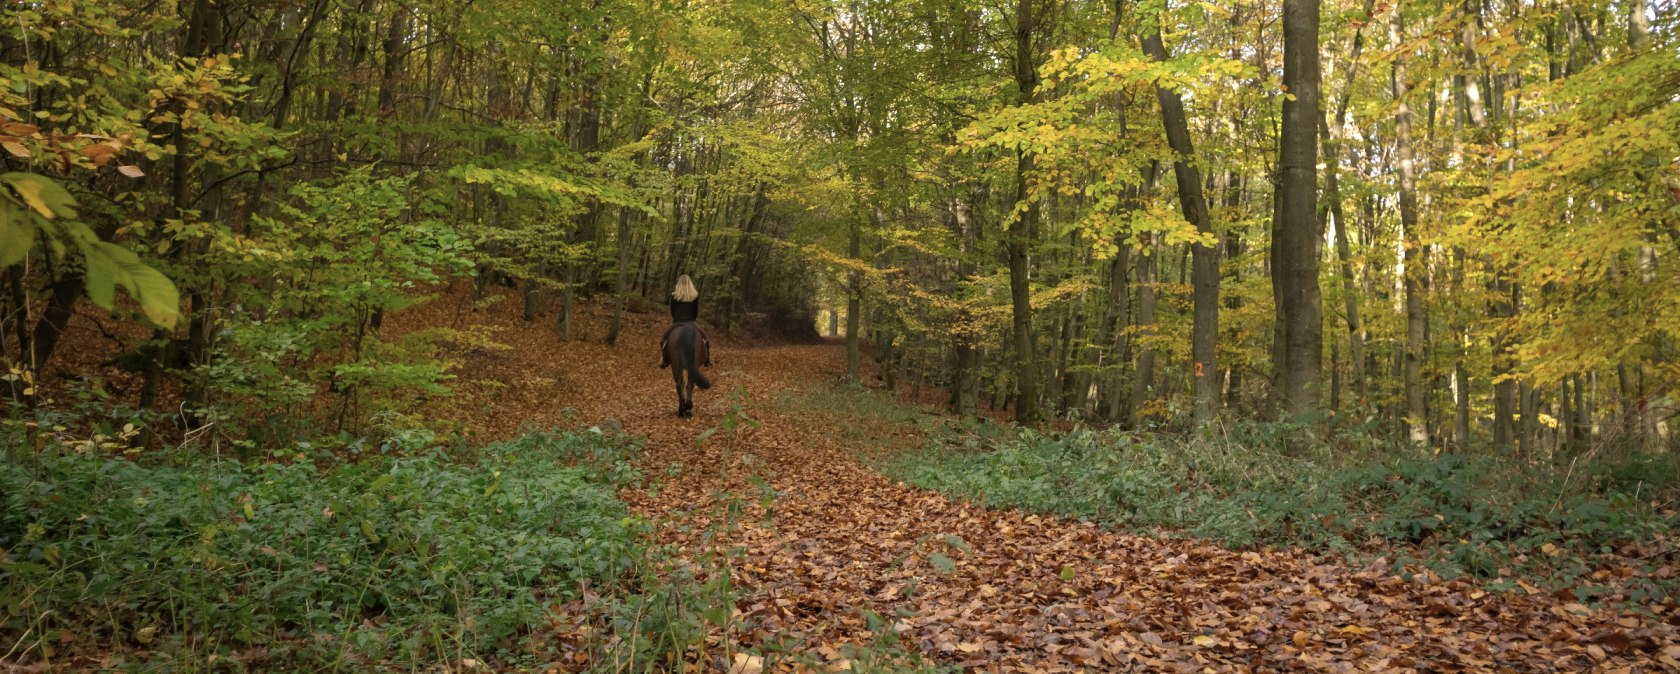 Ausreiten im Wald im Herbst, © Laura Rinneburger